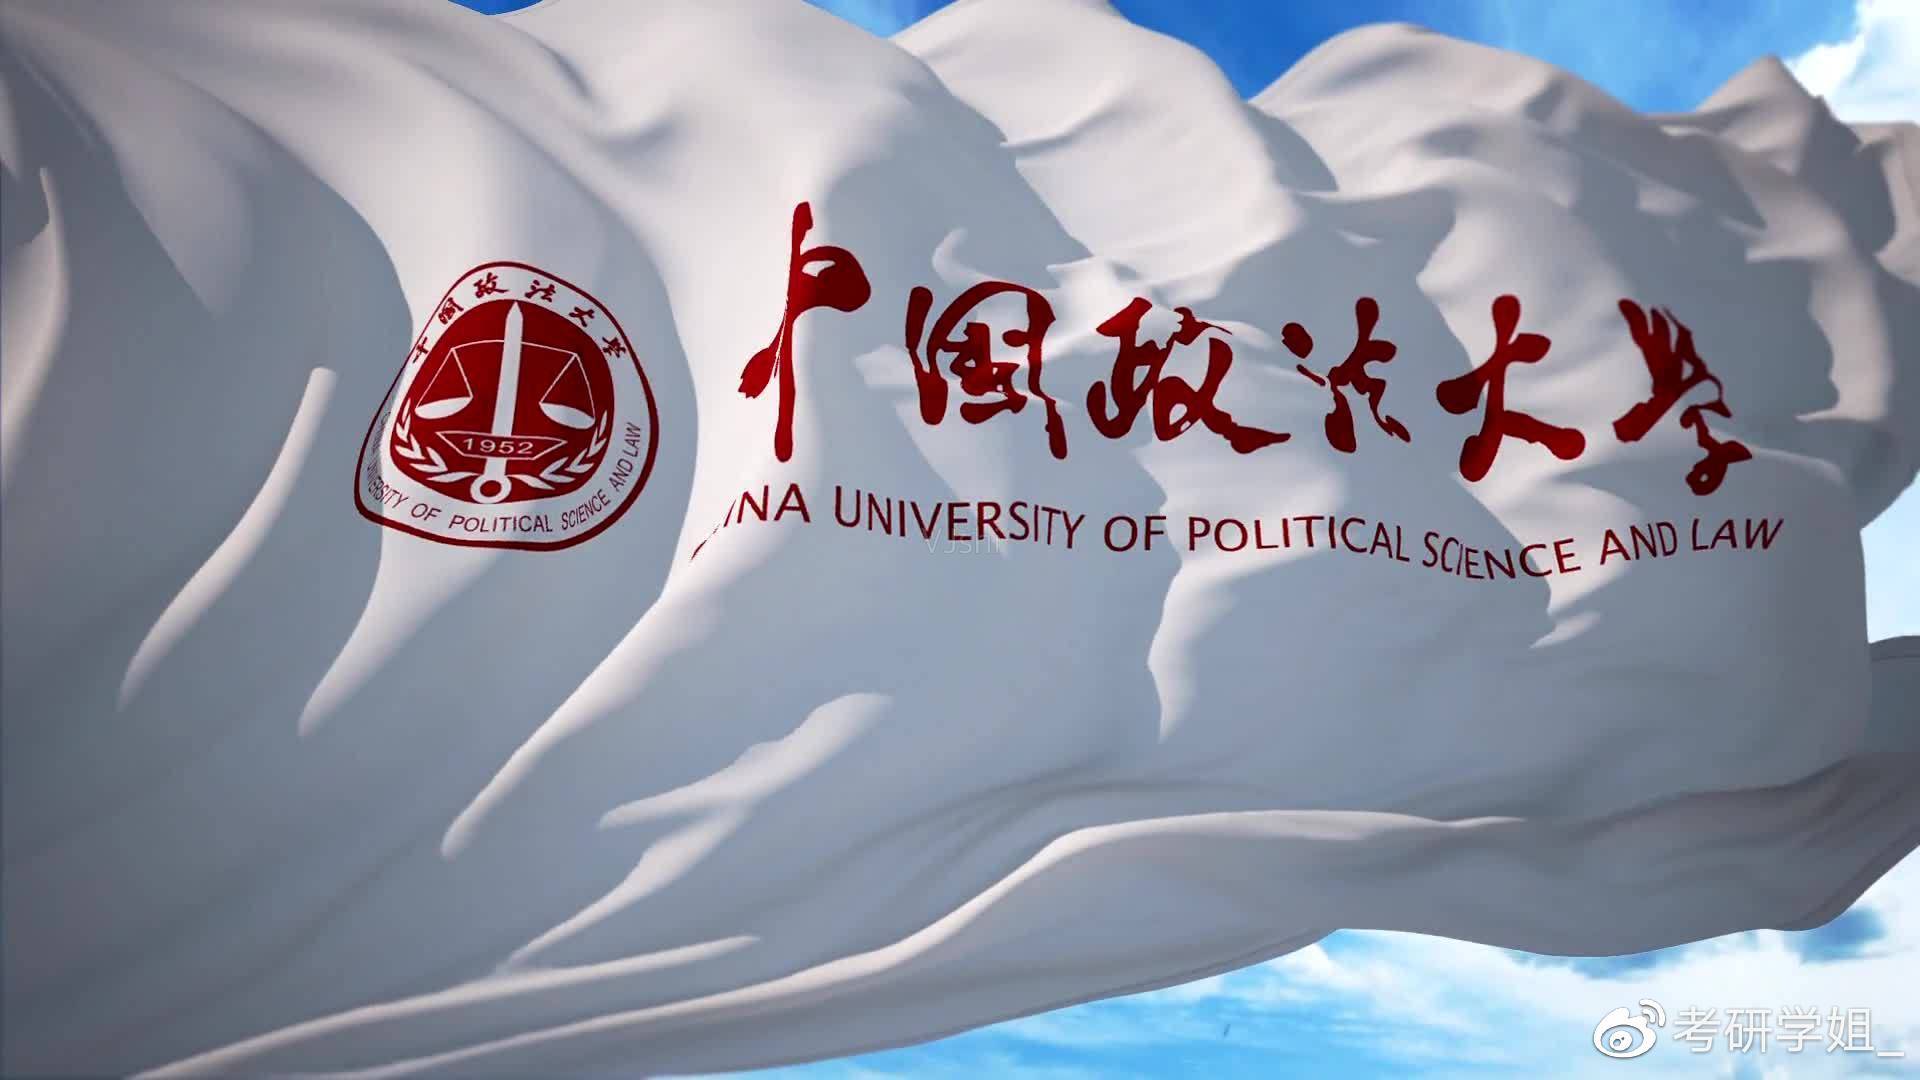 中国政法大学校徽壁纸图片